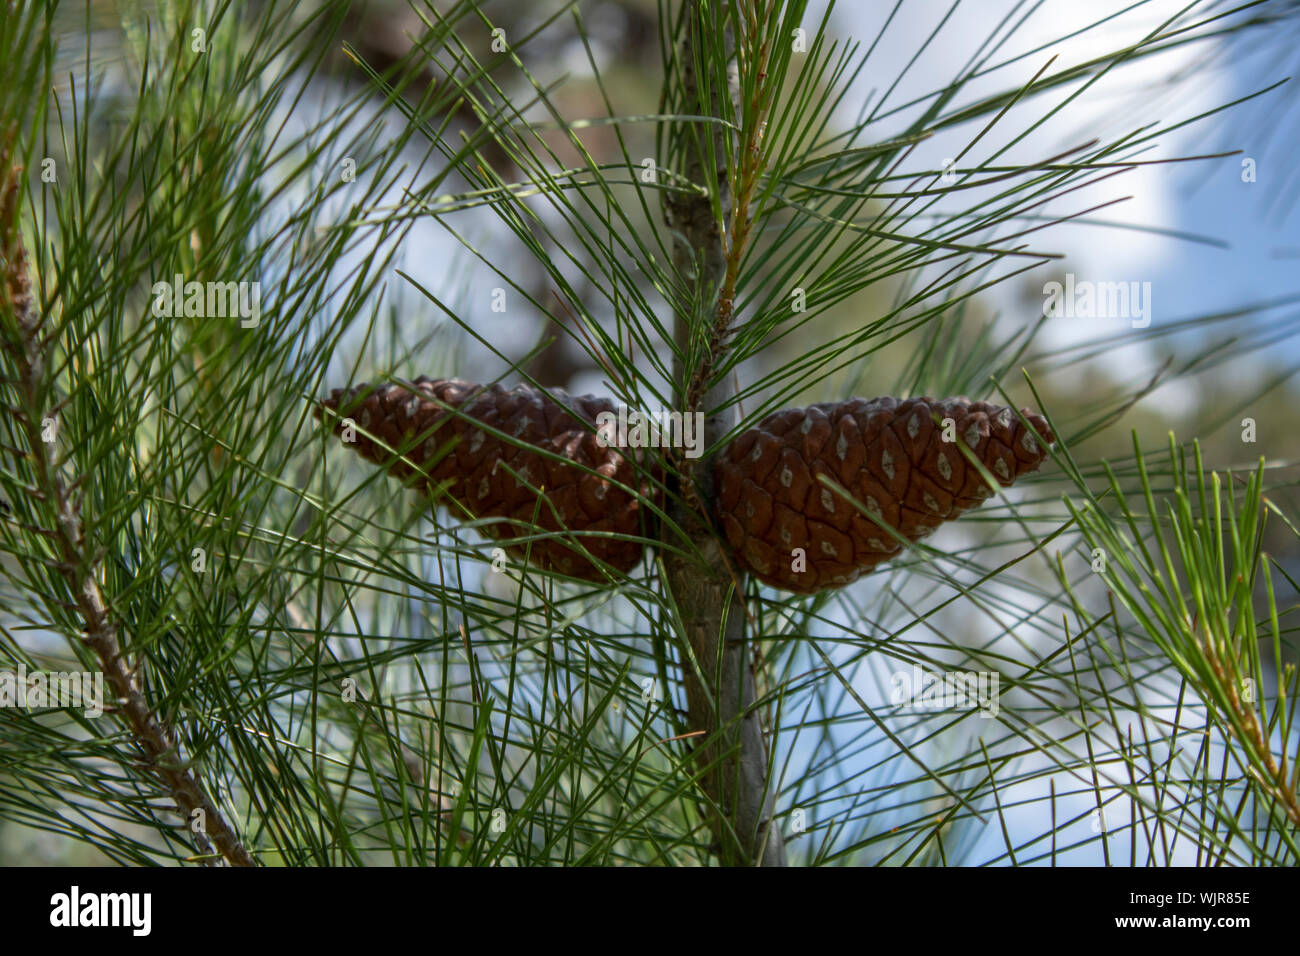 Conus of genus pinus tree. two pieces. close-up Stock Photo